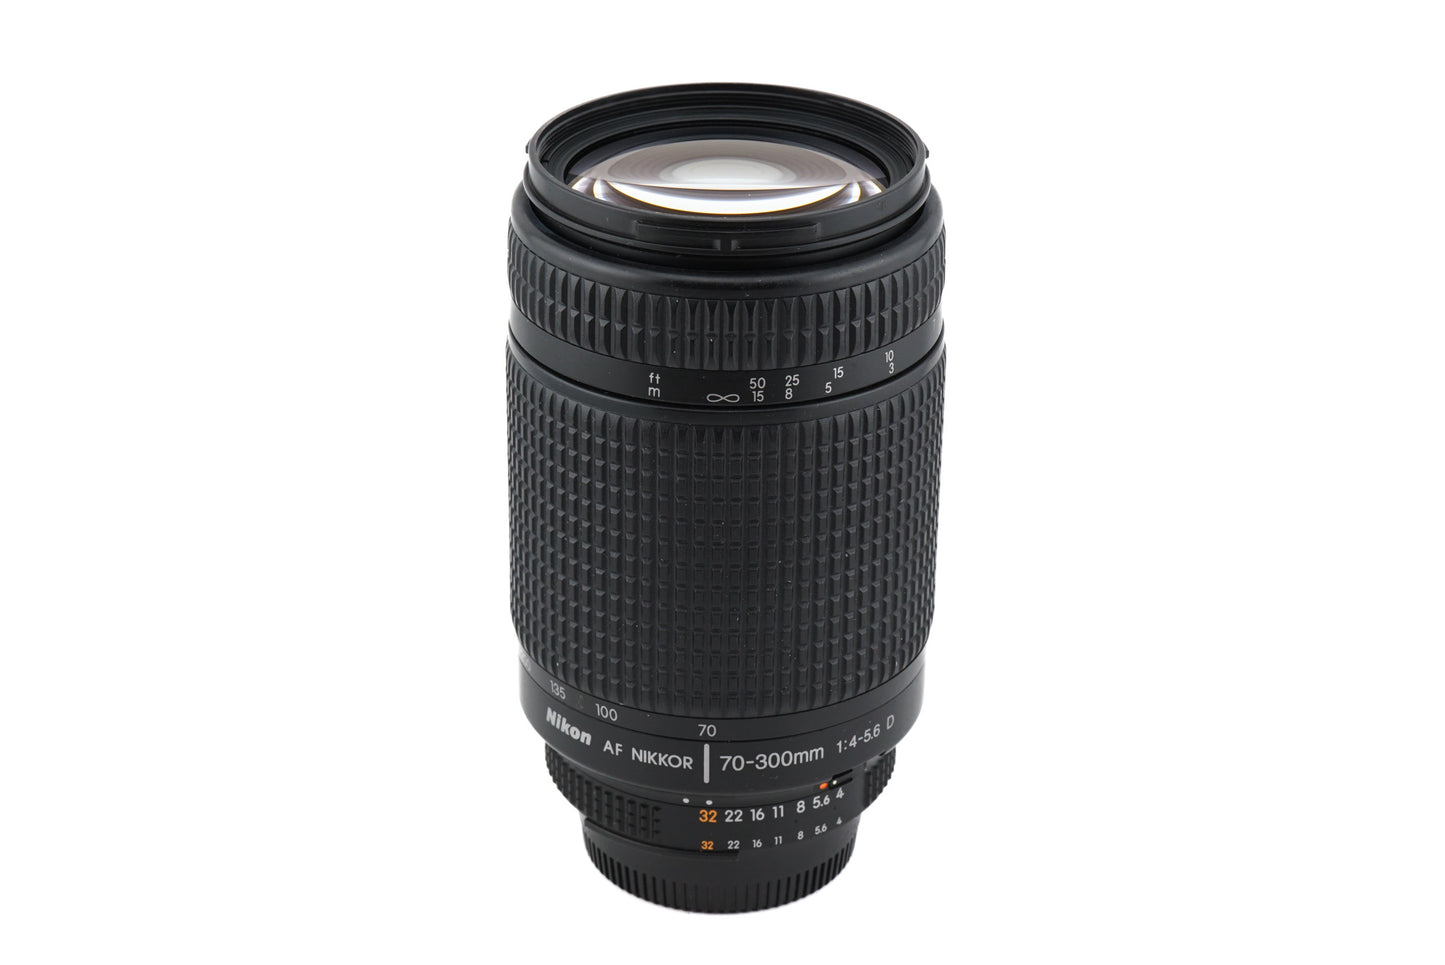 Nikon 70-300mm f4-5.6 D AF Nikkor - Lens